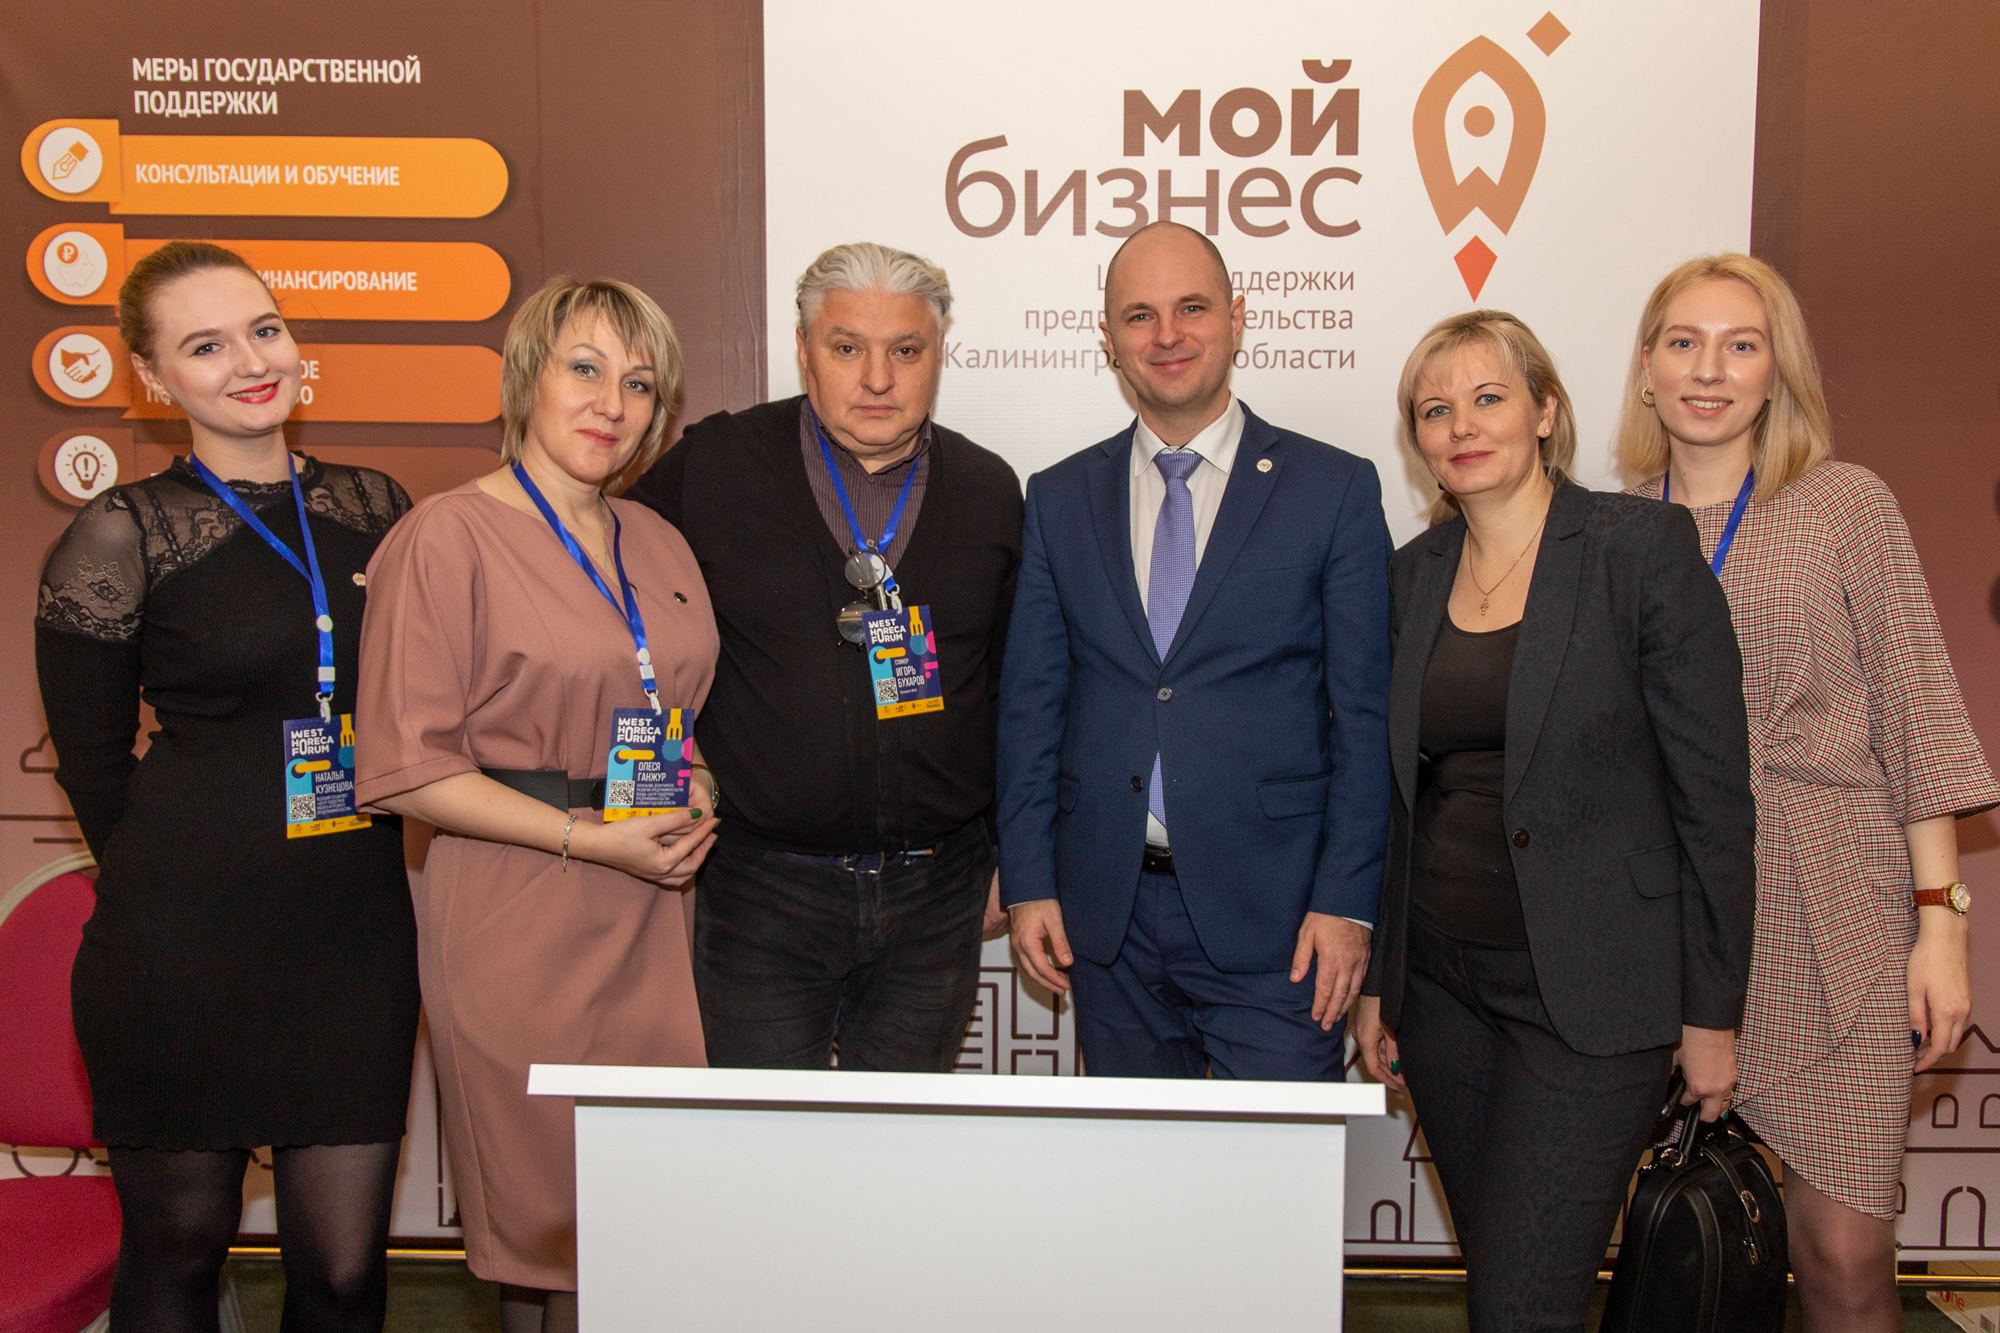 WHFIII, контракты и перспективы. В Калининграде с большим успехом завершился главный региональный форум индустрии гостеприимства